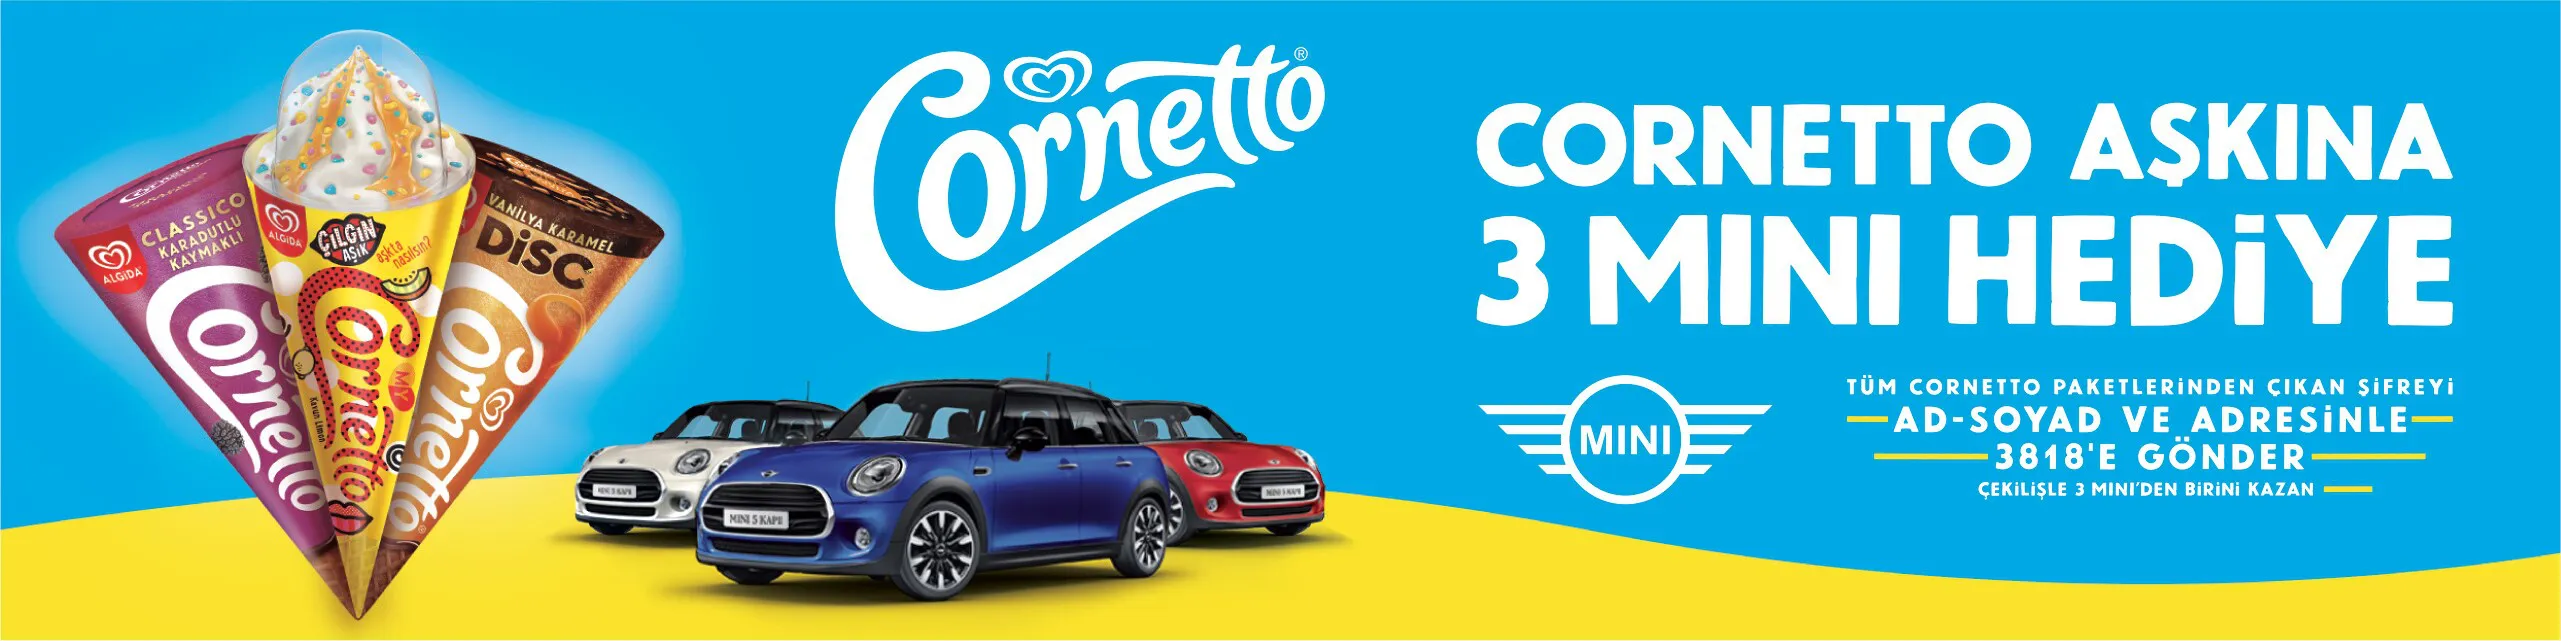 Cornetto Aşkına 3 Mini Hediye Çekiliş Kampanyası!